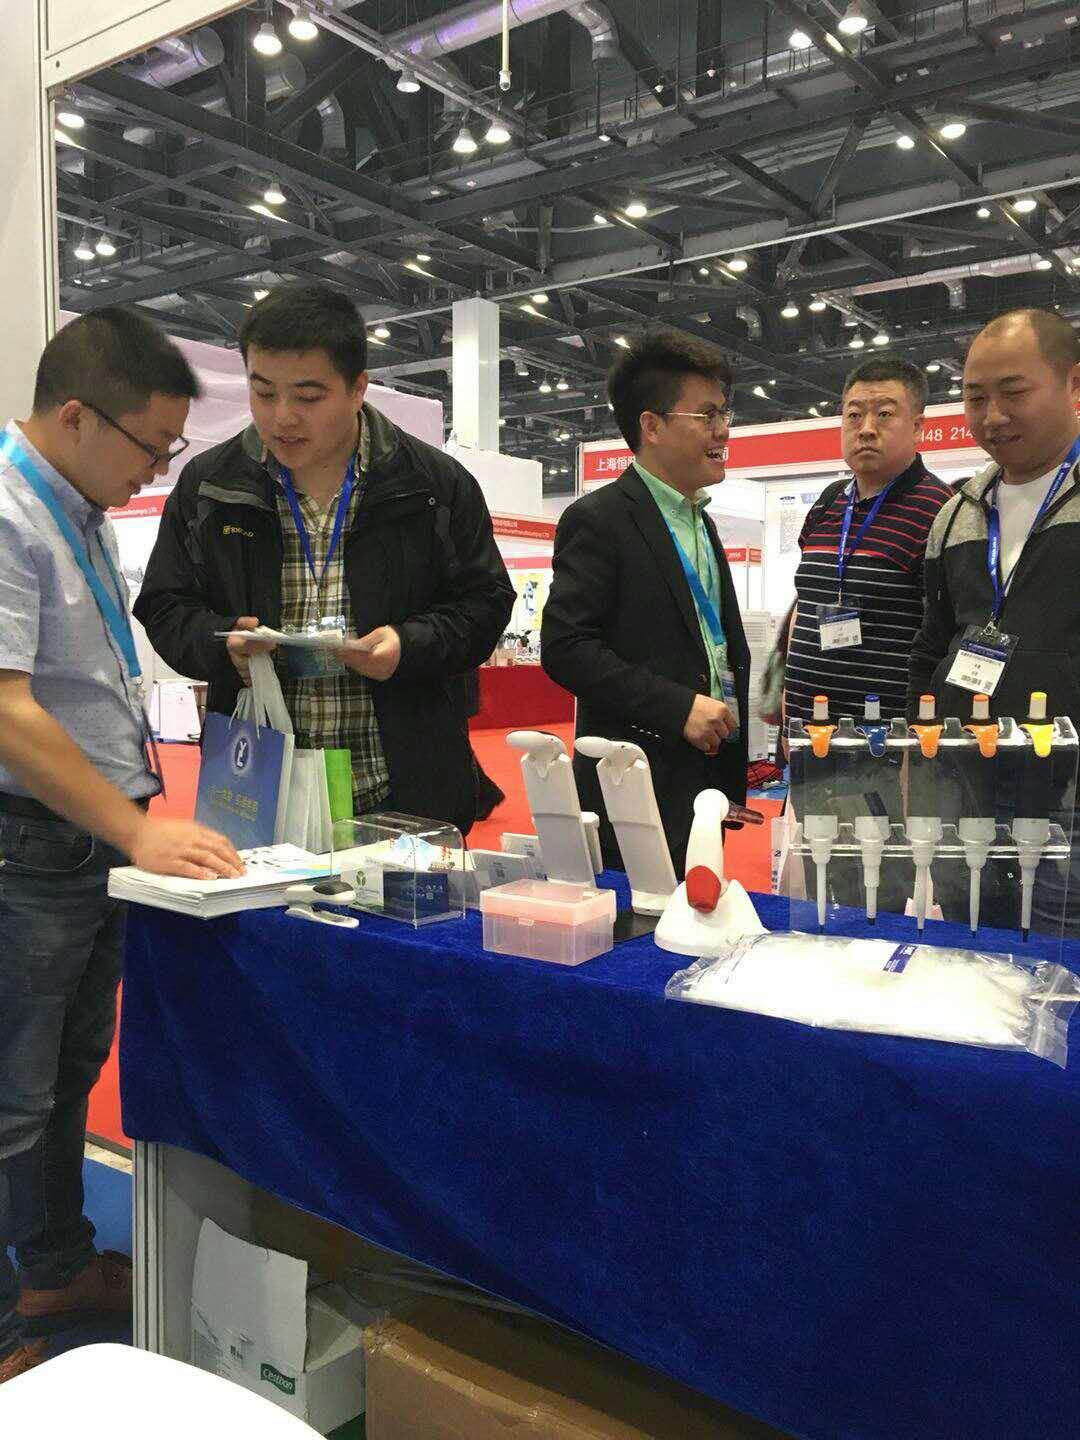 　　第十六届中国国际科学仪器及实验室装备展览会(CISILE)于2018年4月21日-23日在北京国家会议中心正式开展，CISILE旨在加强行业应用和国际交流、科学仪器的成果转化，推动我国科学仪器的产业化、现代化发展，目前已成为我国科学仪器领域规模zui大、水平zui高的国际化专业展会之一，艾斯玛特品牌作为一个年轻的品牌，不断地受到行业内专业人士的认可，此次参展为了让客户能够更多的了解艾斯玛特产品和艾斯玛特发展历程，感谢一直以来支持艾斯玛特、关注艾斯玛特的客户。在这次现场我们与各界专家、经销商、各高校老师进行了当面沟通和交流，感谢对艾斯玛特产品的肯定，我们会一如既往的努力服务好我们的客户。